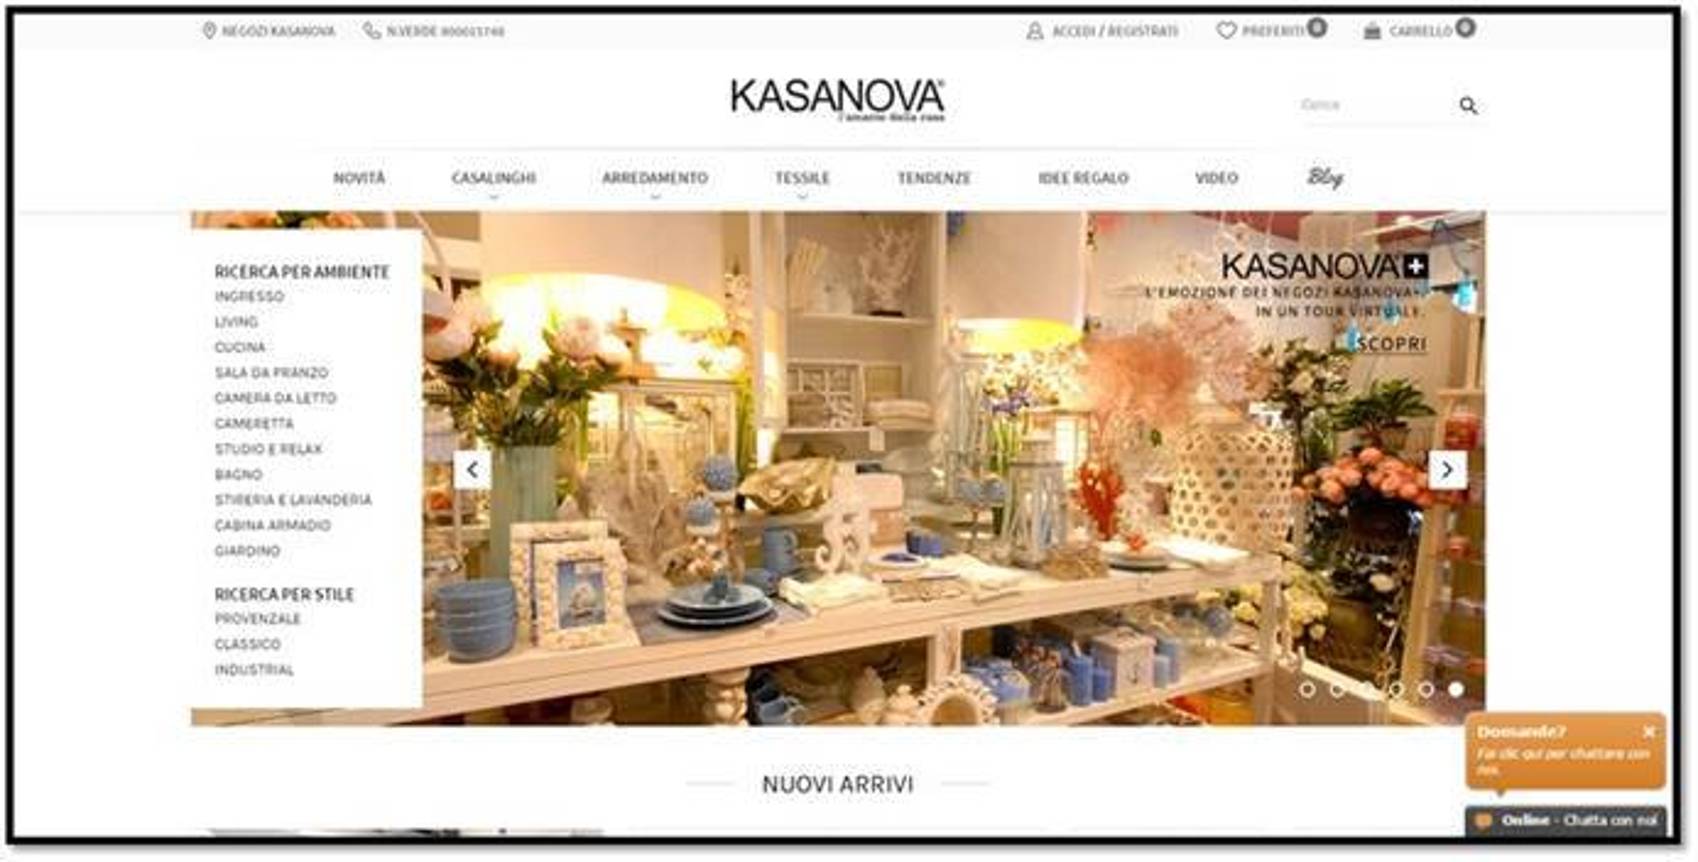 KASANOVA.IT, IN “HOME” PAGE UN MONDO DA CLICCARE…